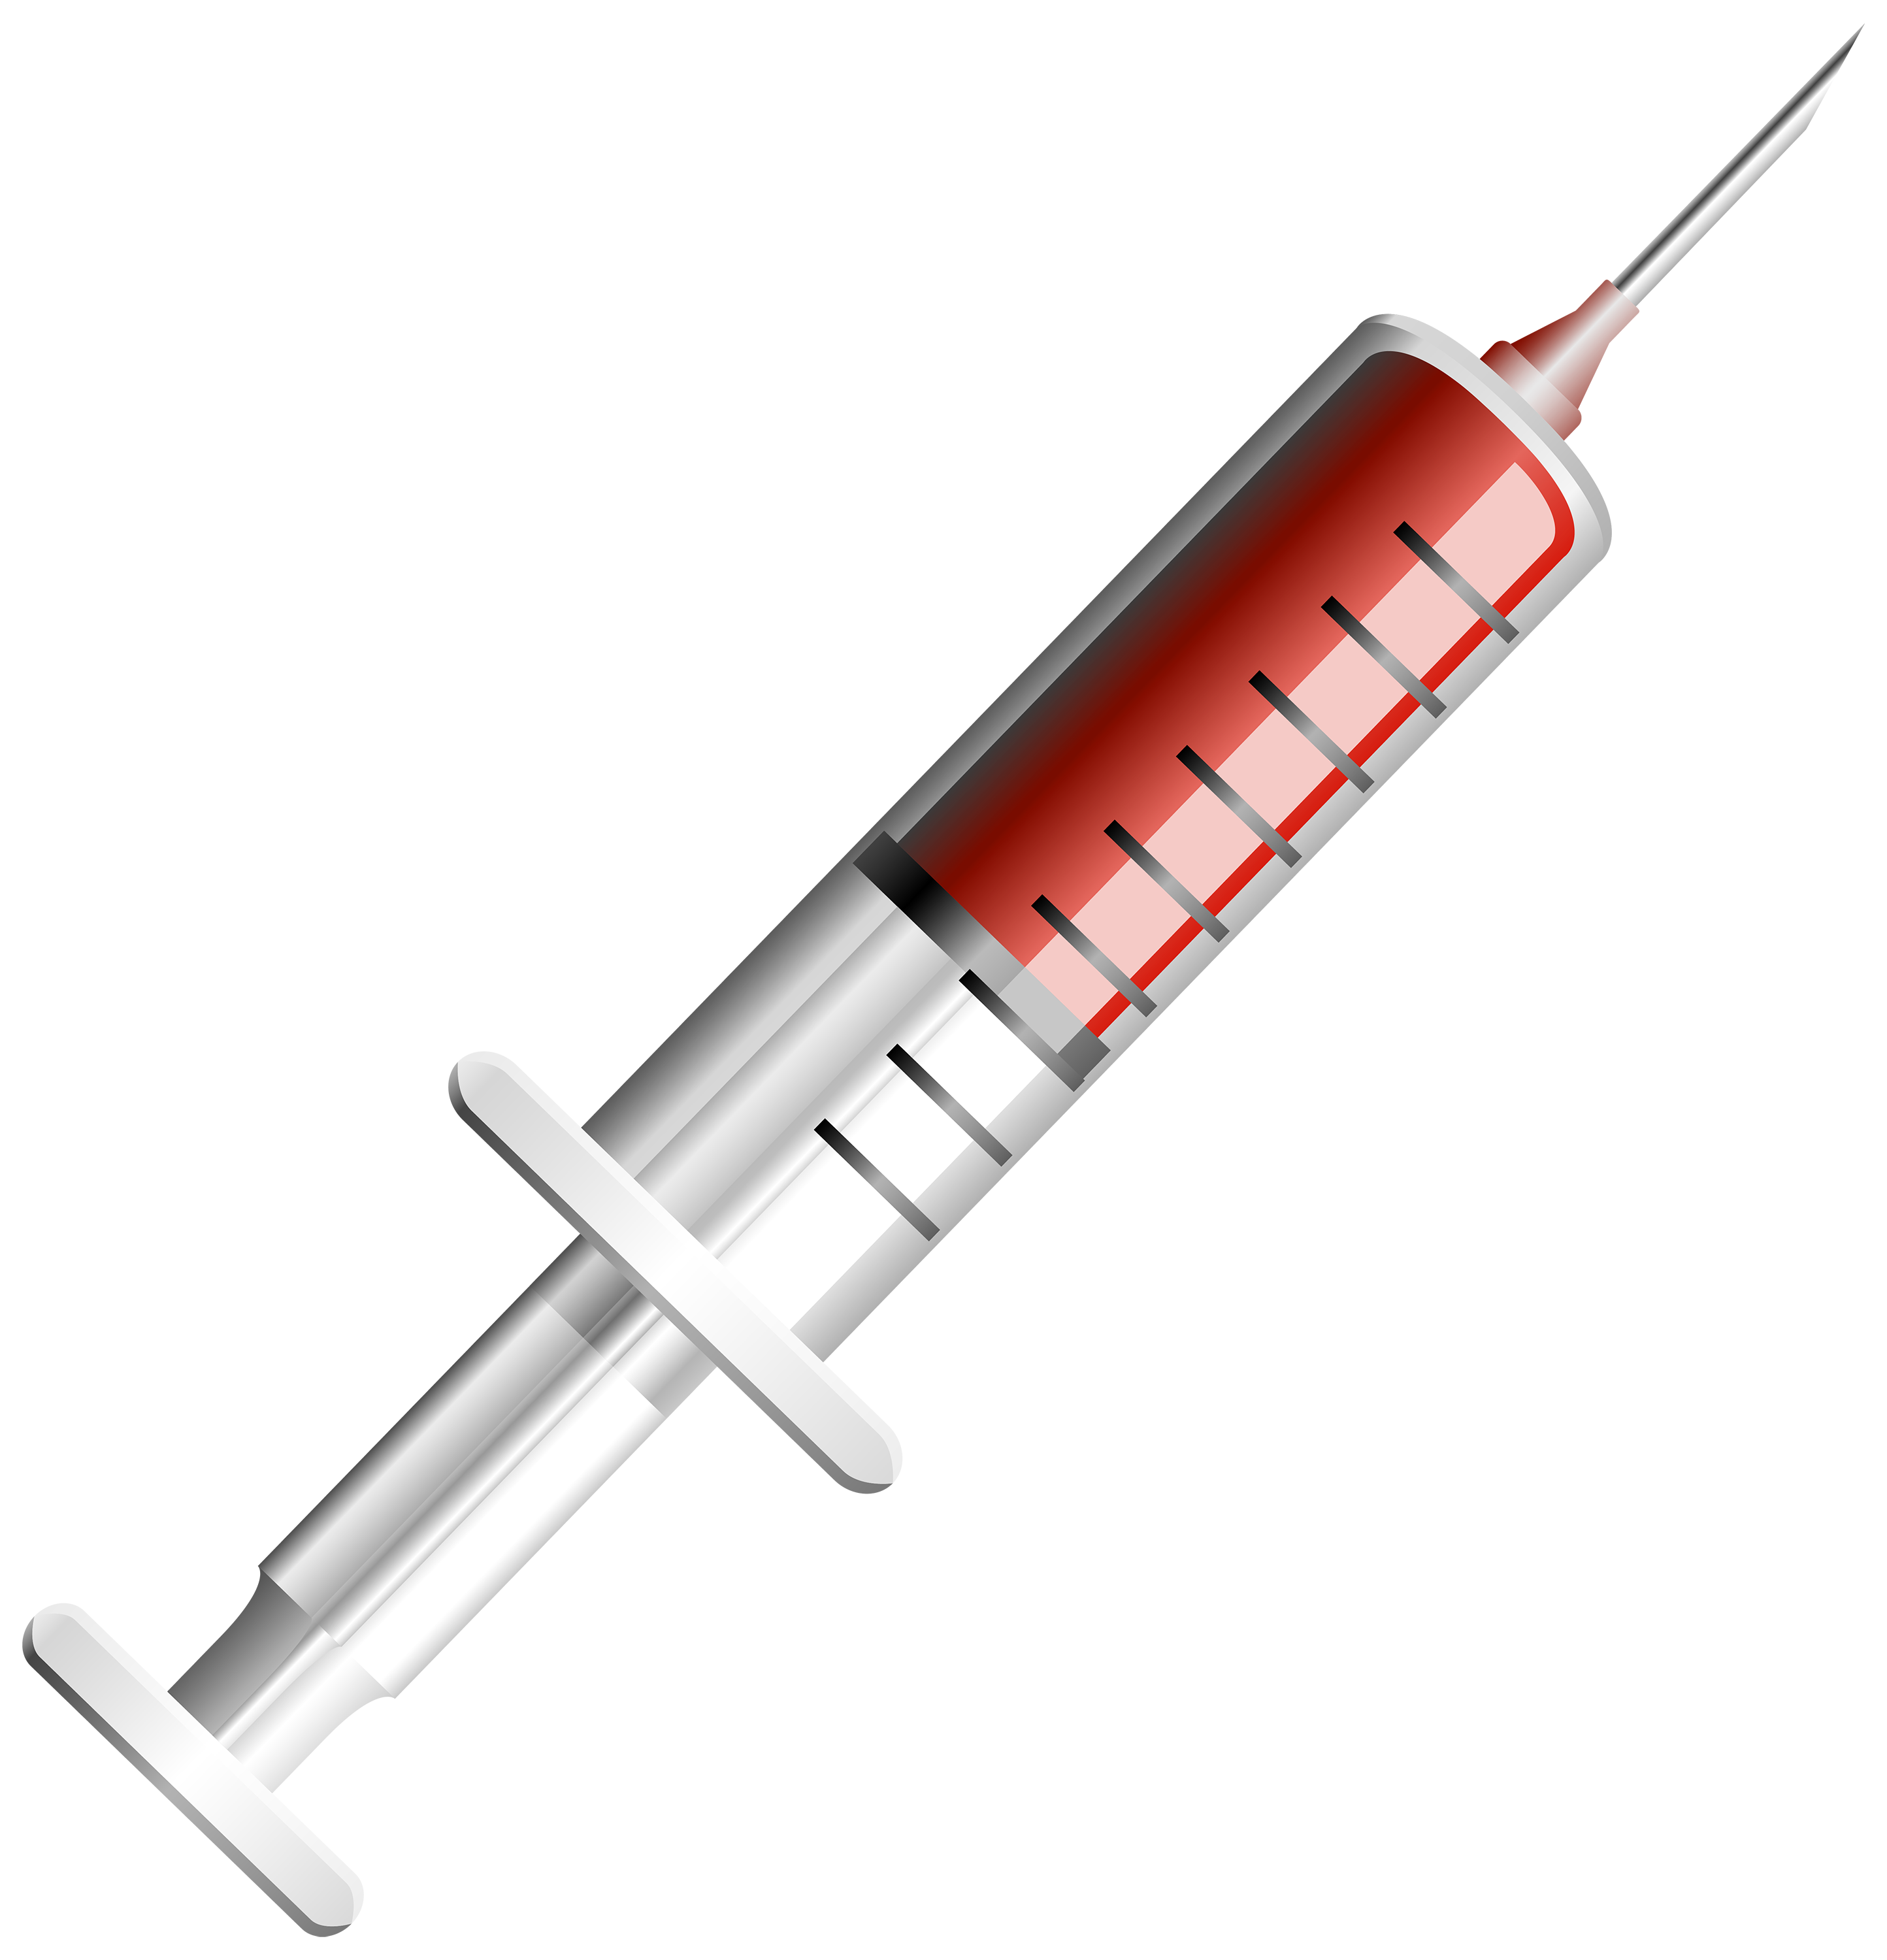 Syringe images download clipa - Syringe Clip Art